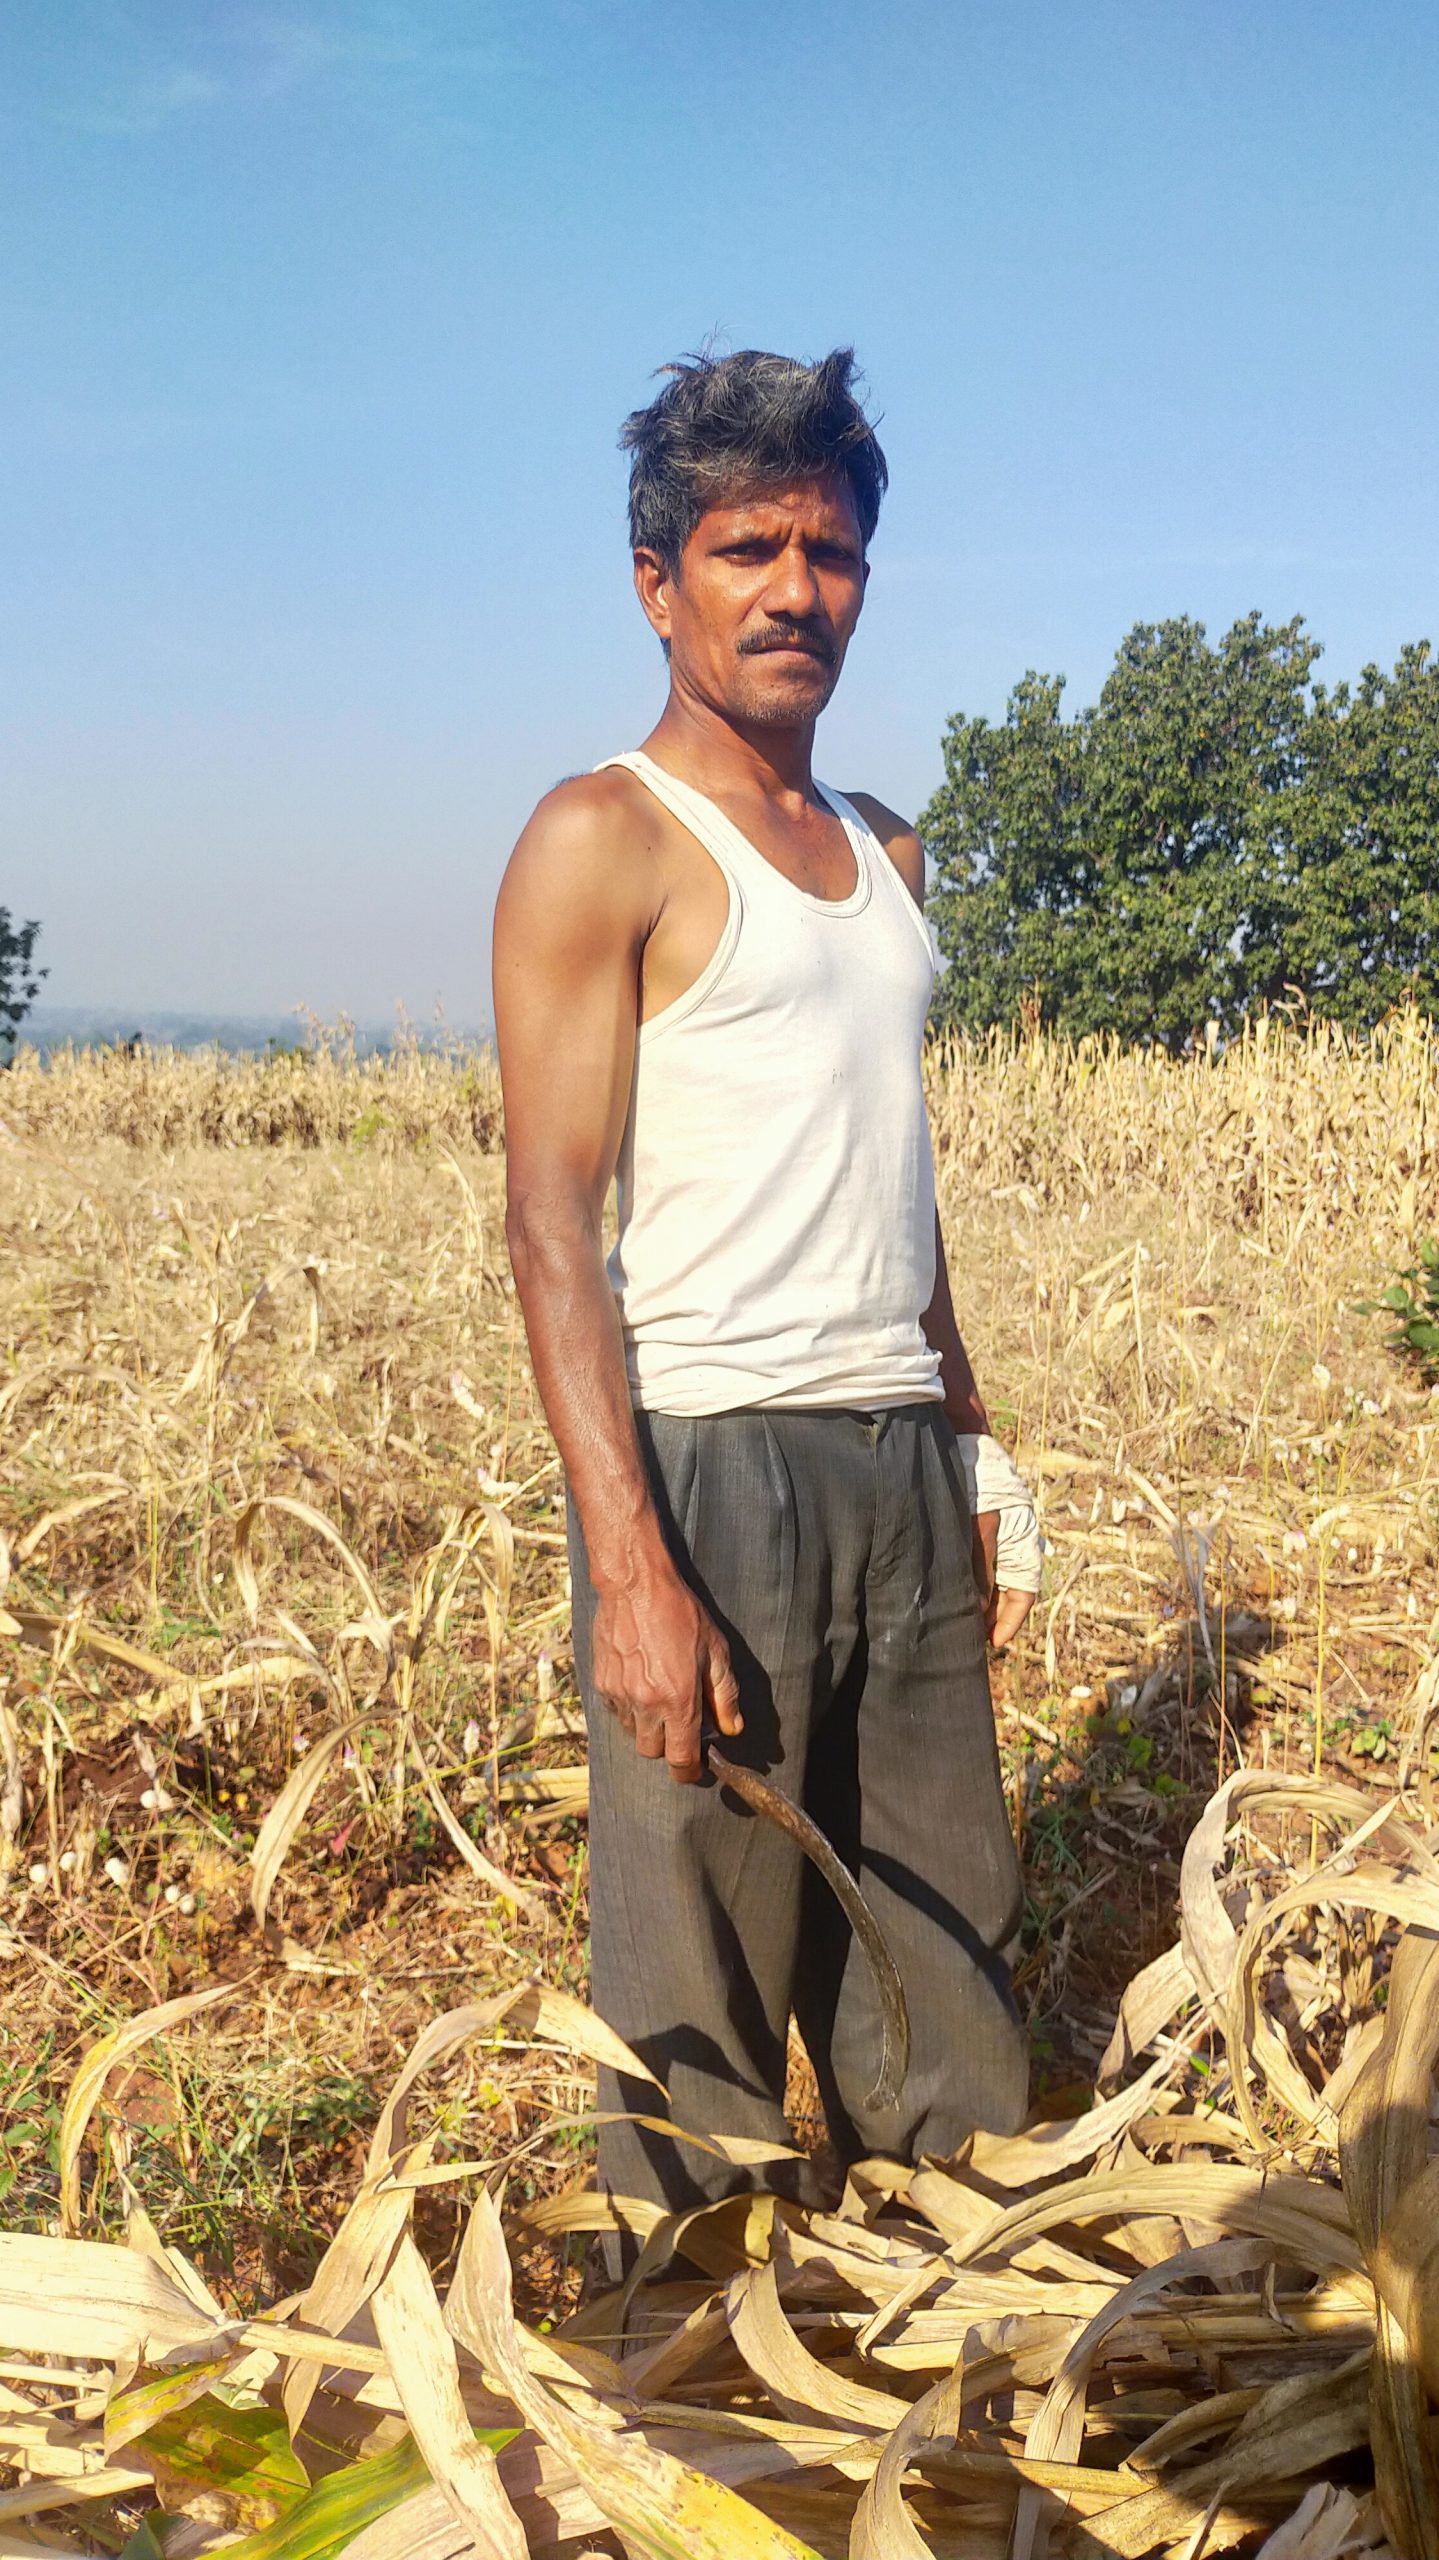 Farmer Working in Field